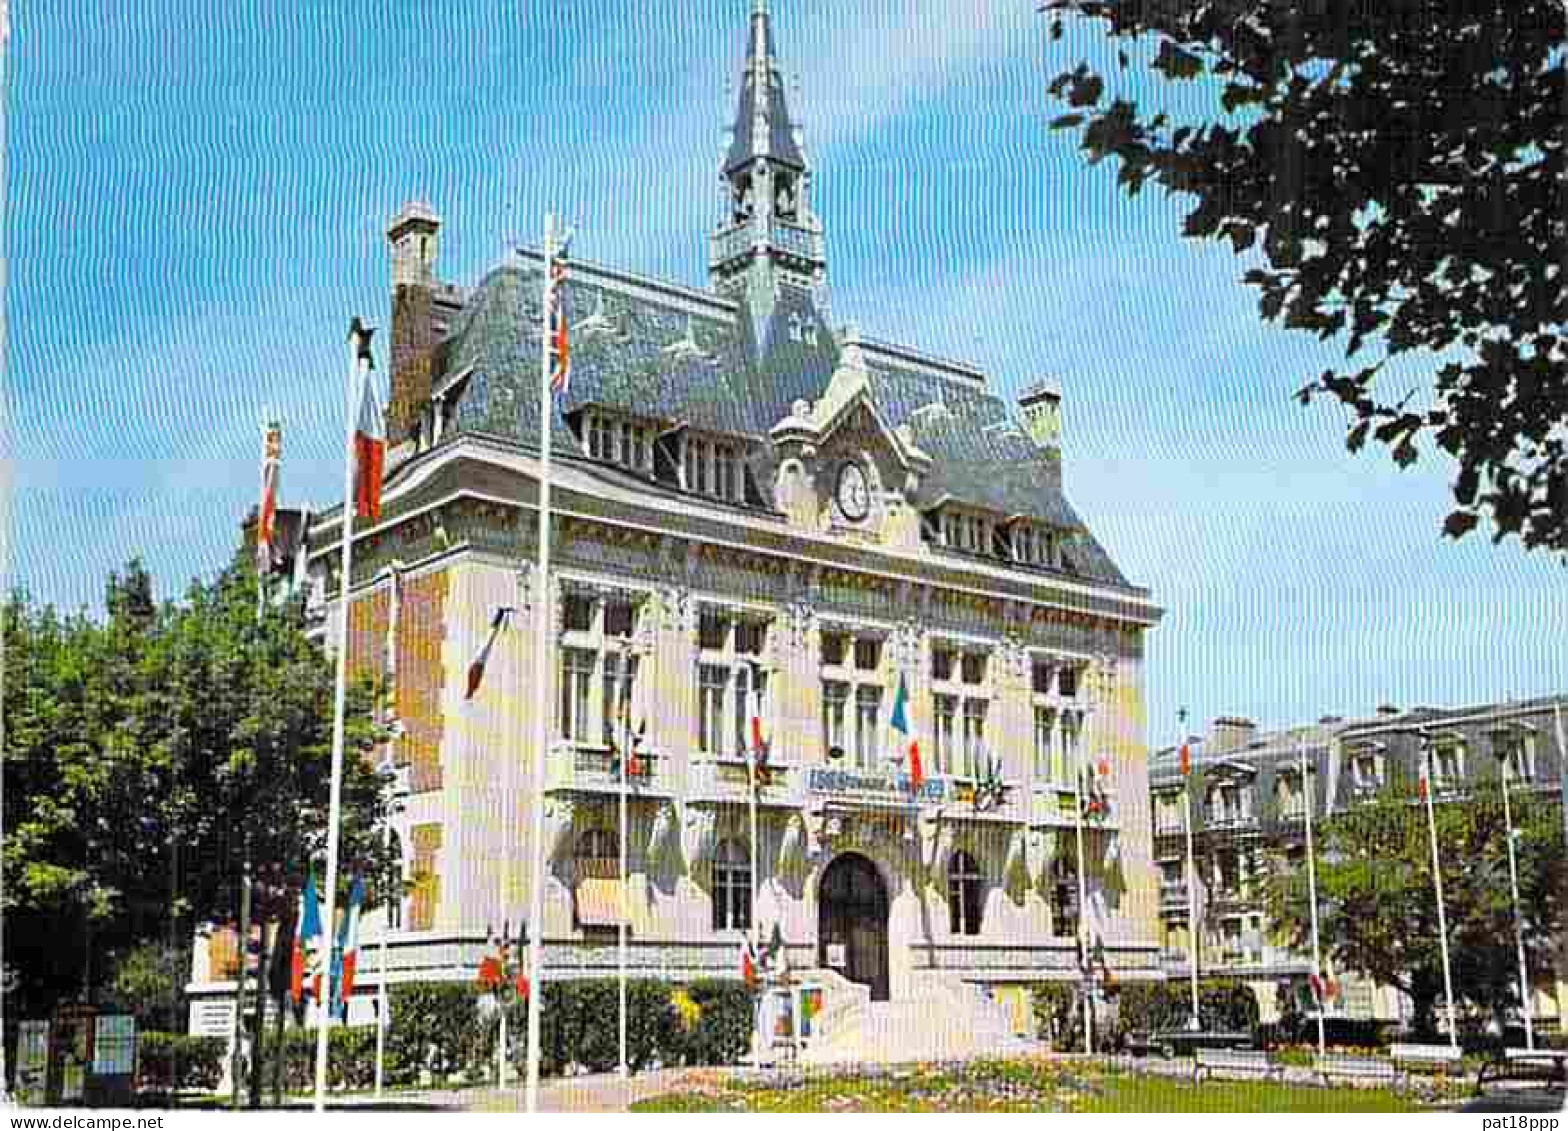 Lot de 45 cartes de MAIRIE - HOTEL DE VILLE (Villes et Villages) FRANCE : 10 CPA + 5 CPSM PF + 30 CPSM-CPM (1960-90's)